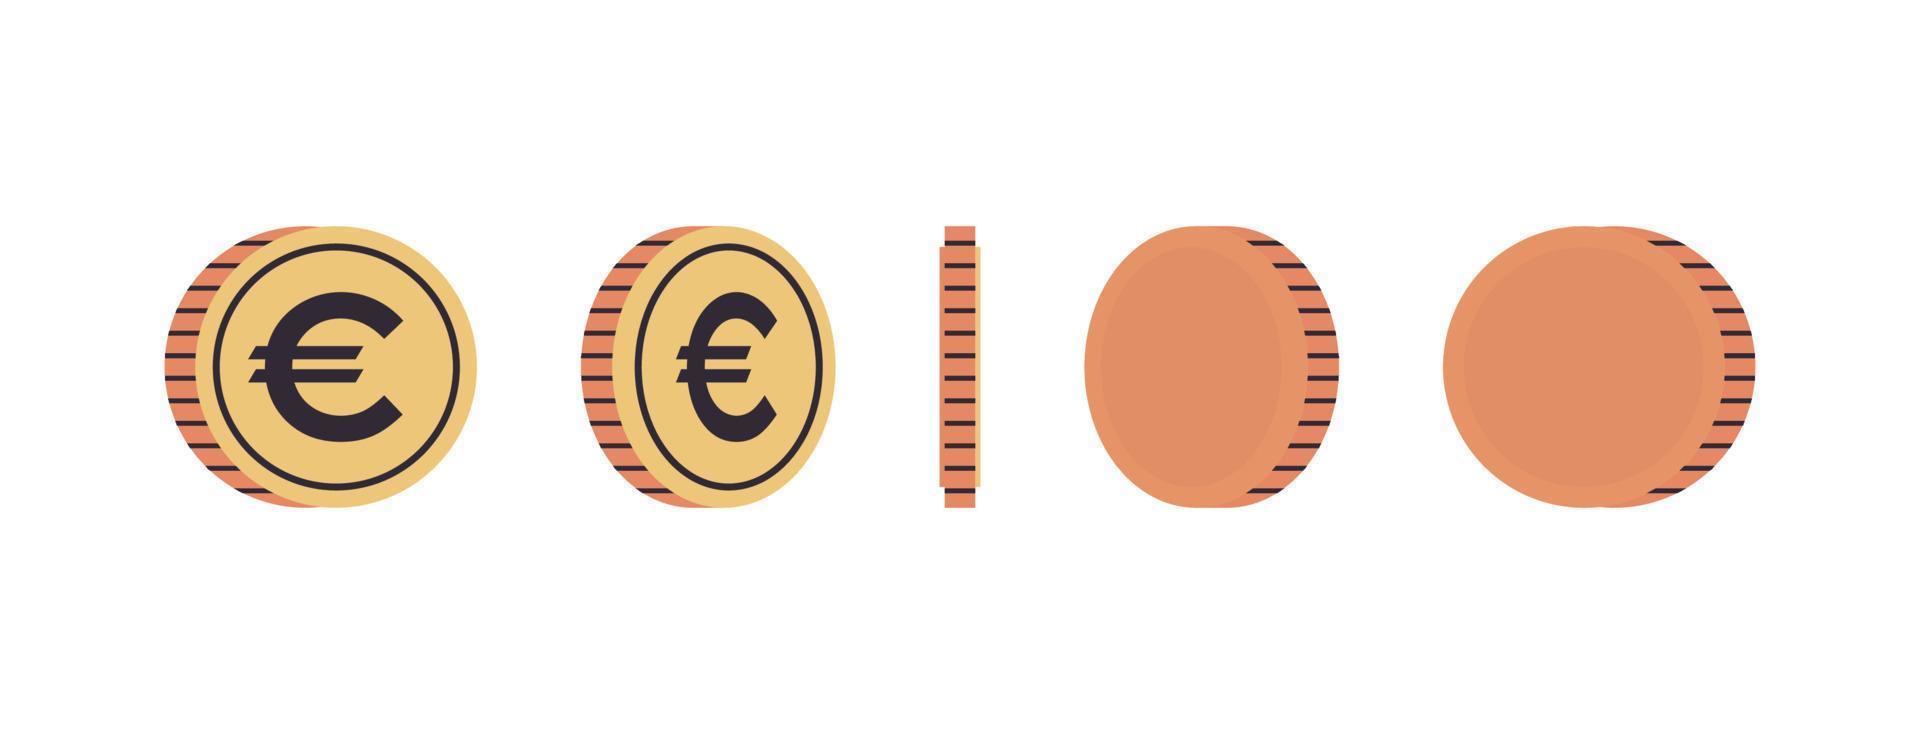 pièces de monnaie internationales et pièces d'or à différents angles de concept de rotation illustration vectorielle plane pleine longueur. vecteur